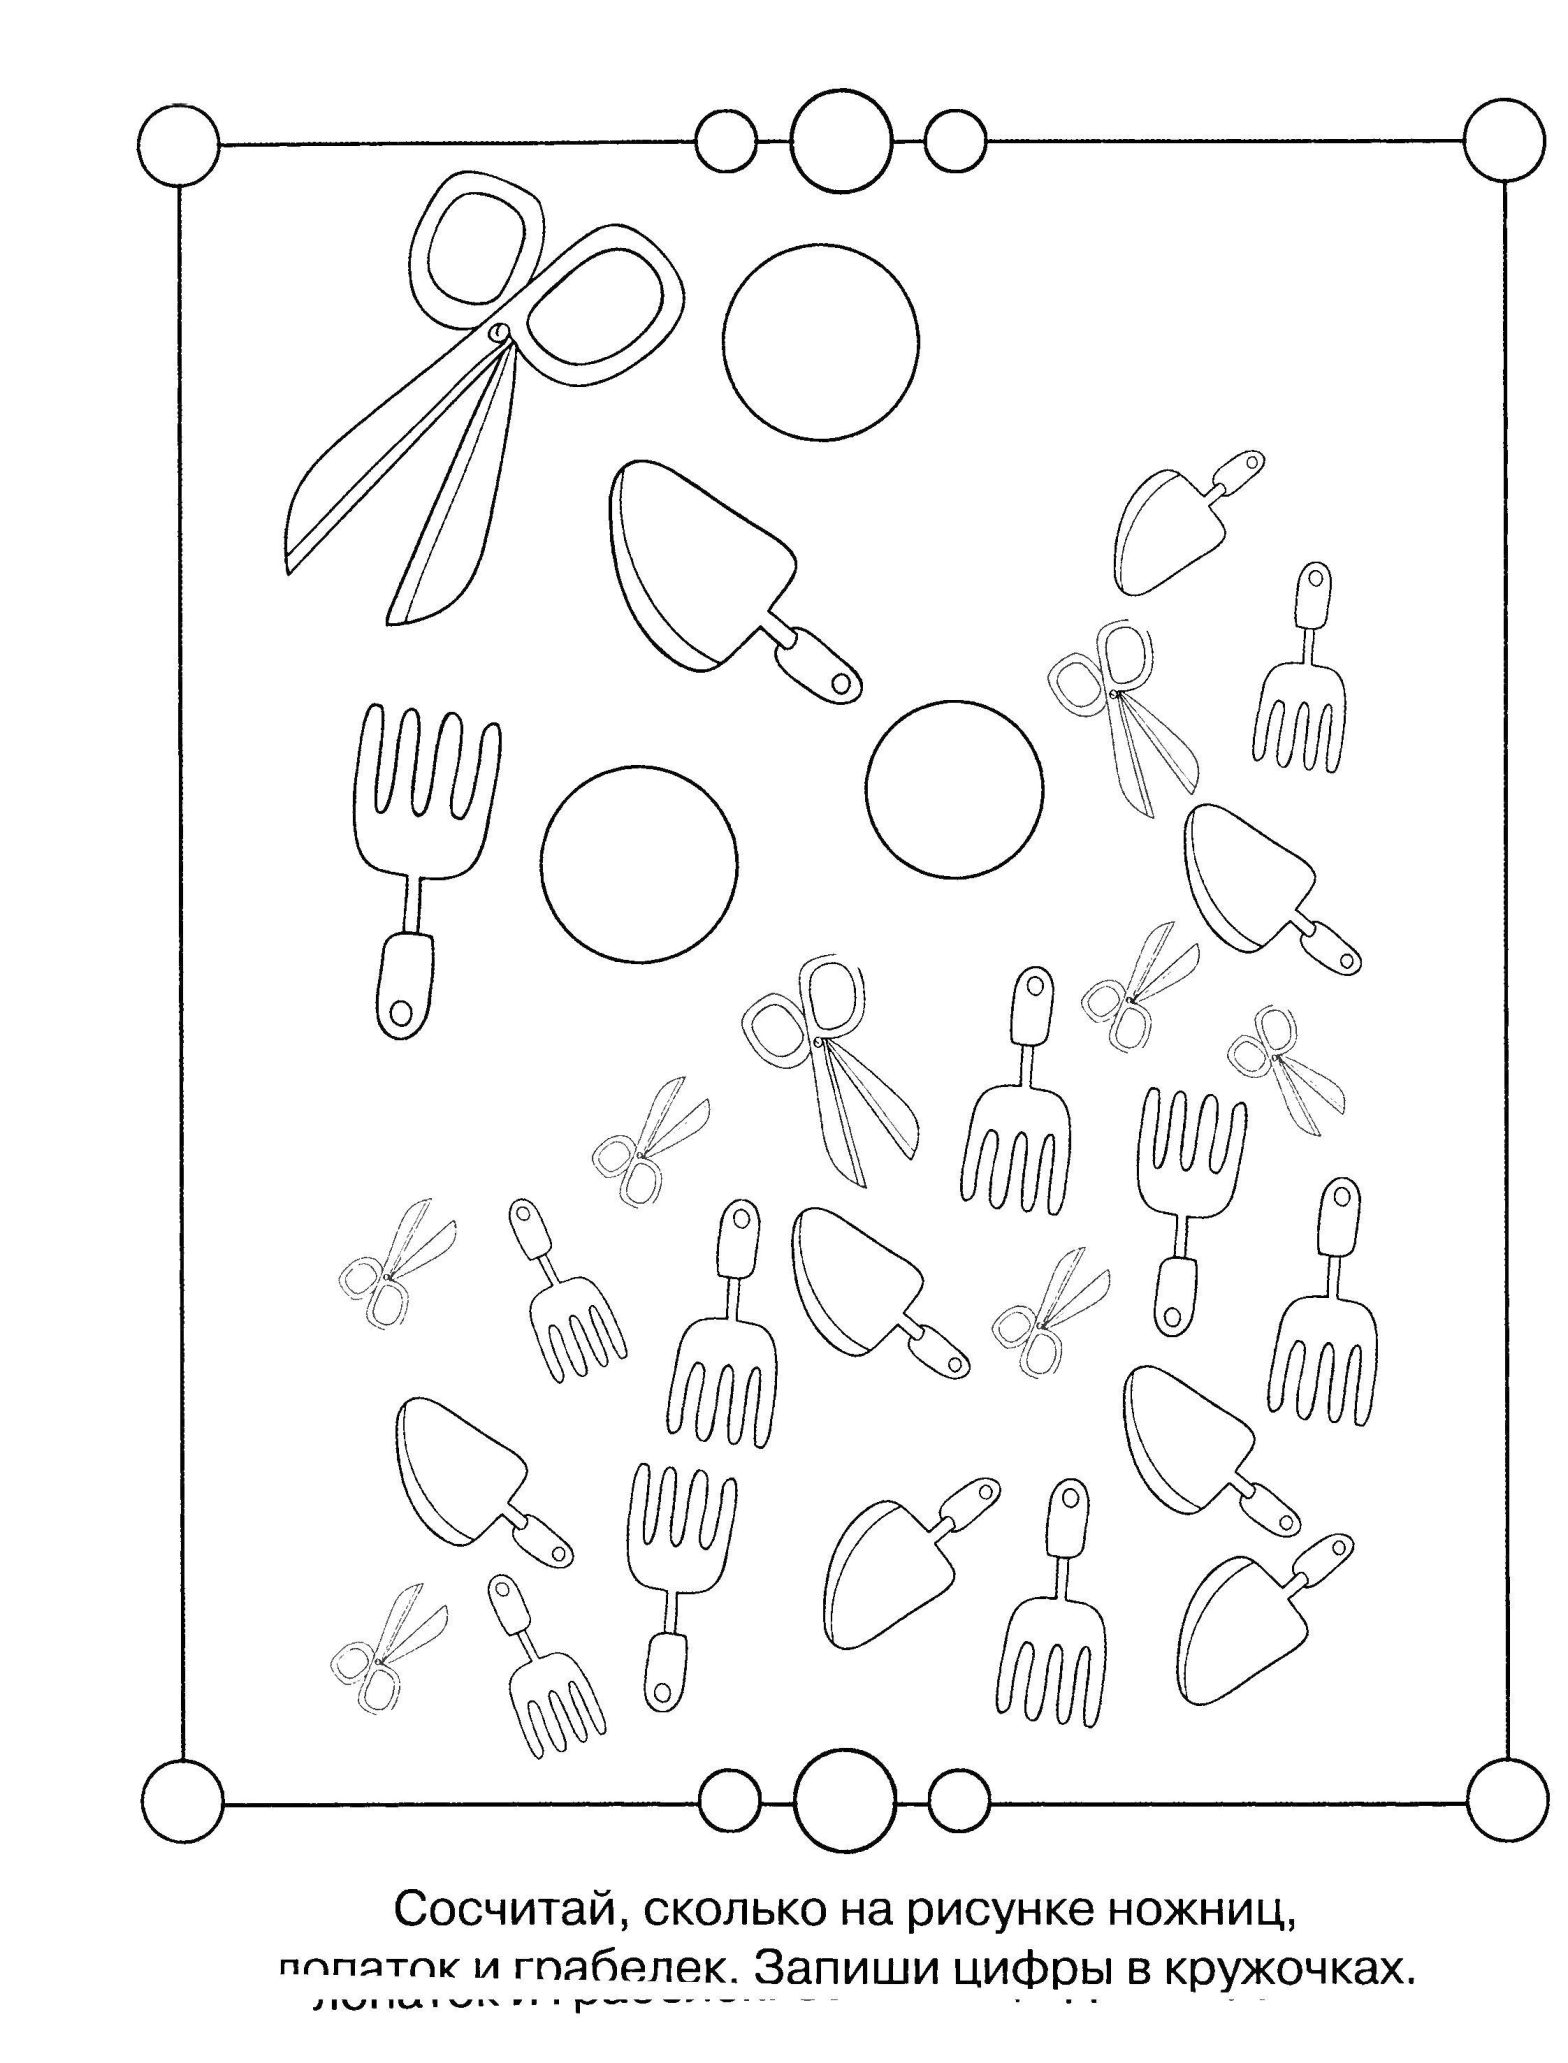 Раскраска-ребус для детей: логическая задача с картинкой (ребусы, логика)